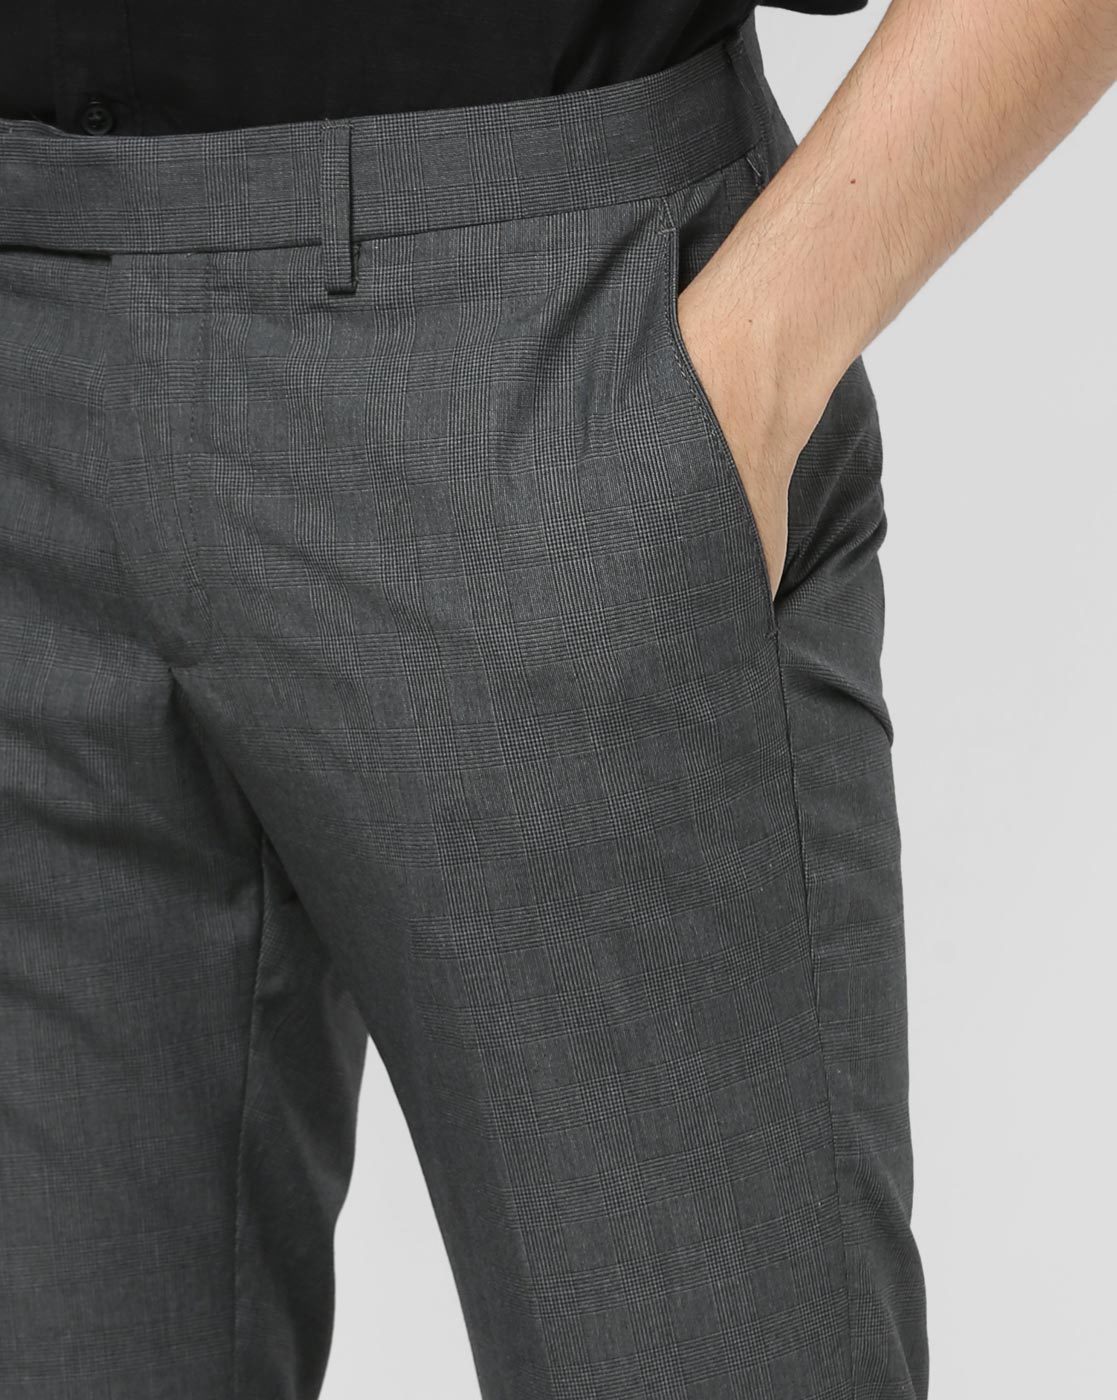 Men's Grey Dress Pants & Slacks | Nordstrom Rack-mncb.edu.vn